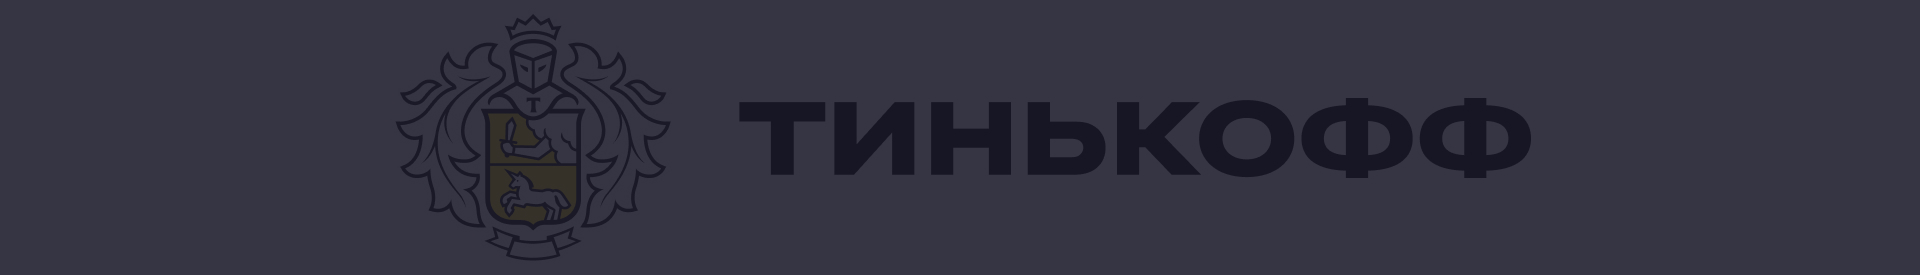 Акции и спецпредложения в банке Тинькофф в Ростове-на-Дону